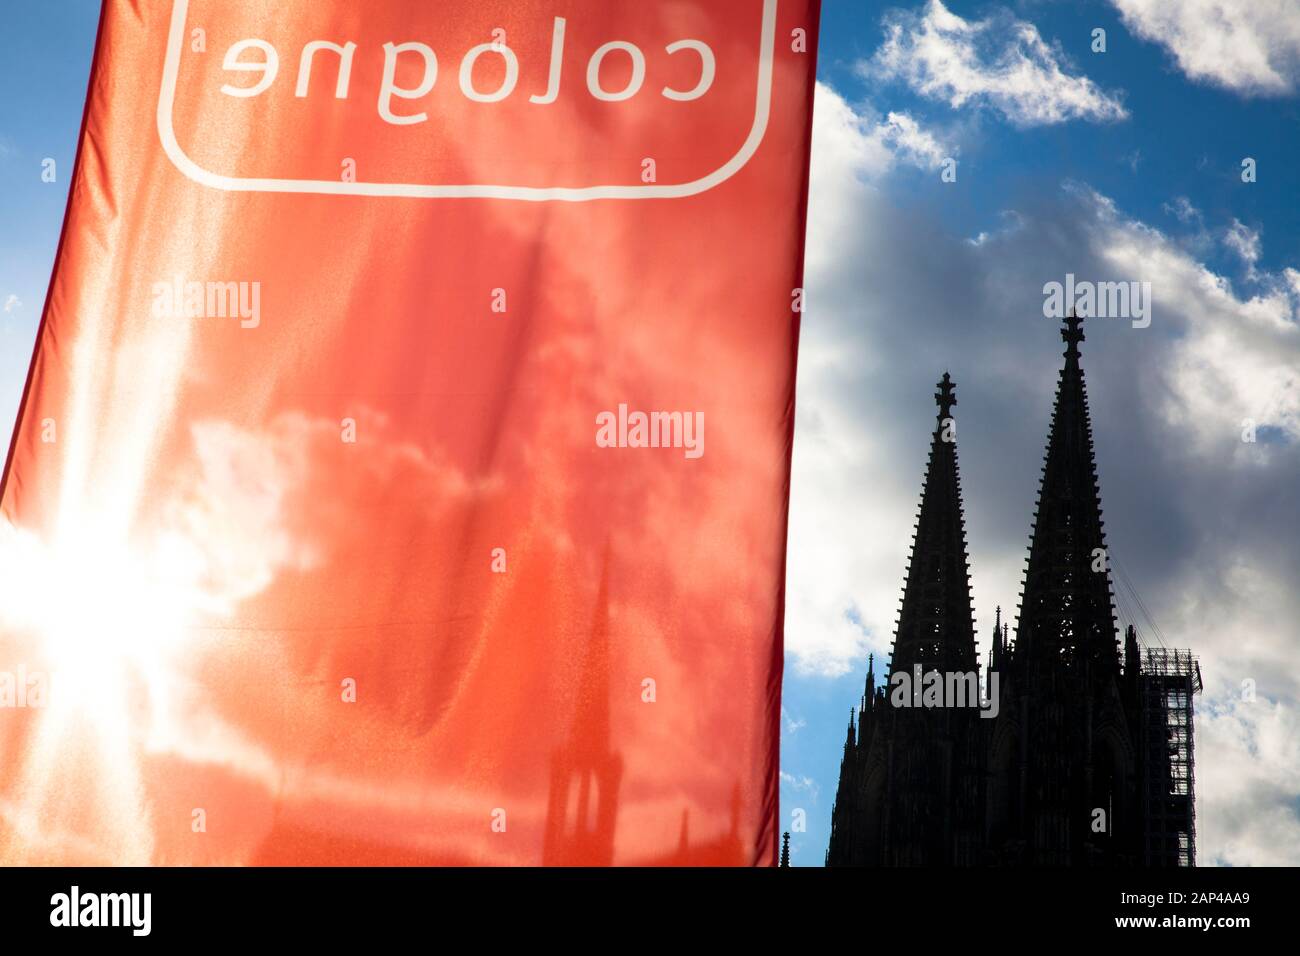 La catedral de Colonia, la bandera roja con la palabra Colonia, Colonia, Alemania. Der Dom, Rote Fahne mit dem Wort Colonia, Koeln, Deutschland. Foto de stock